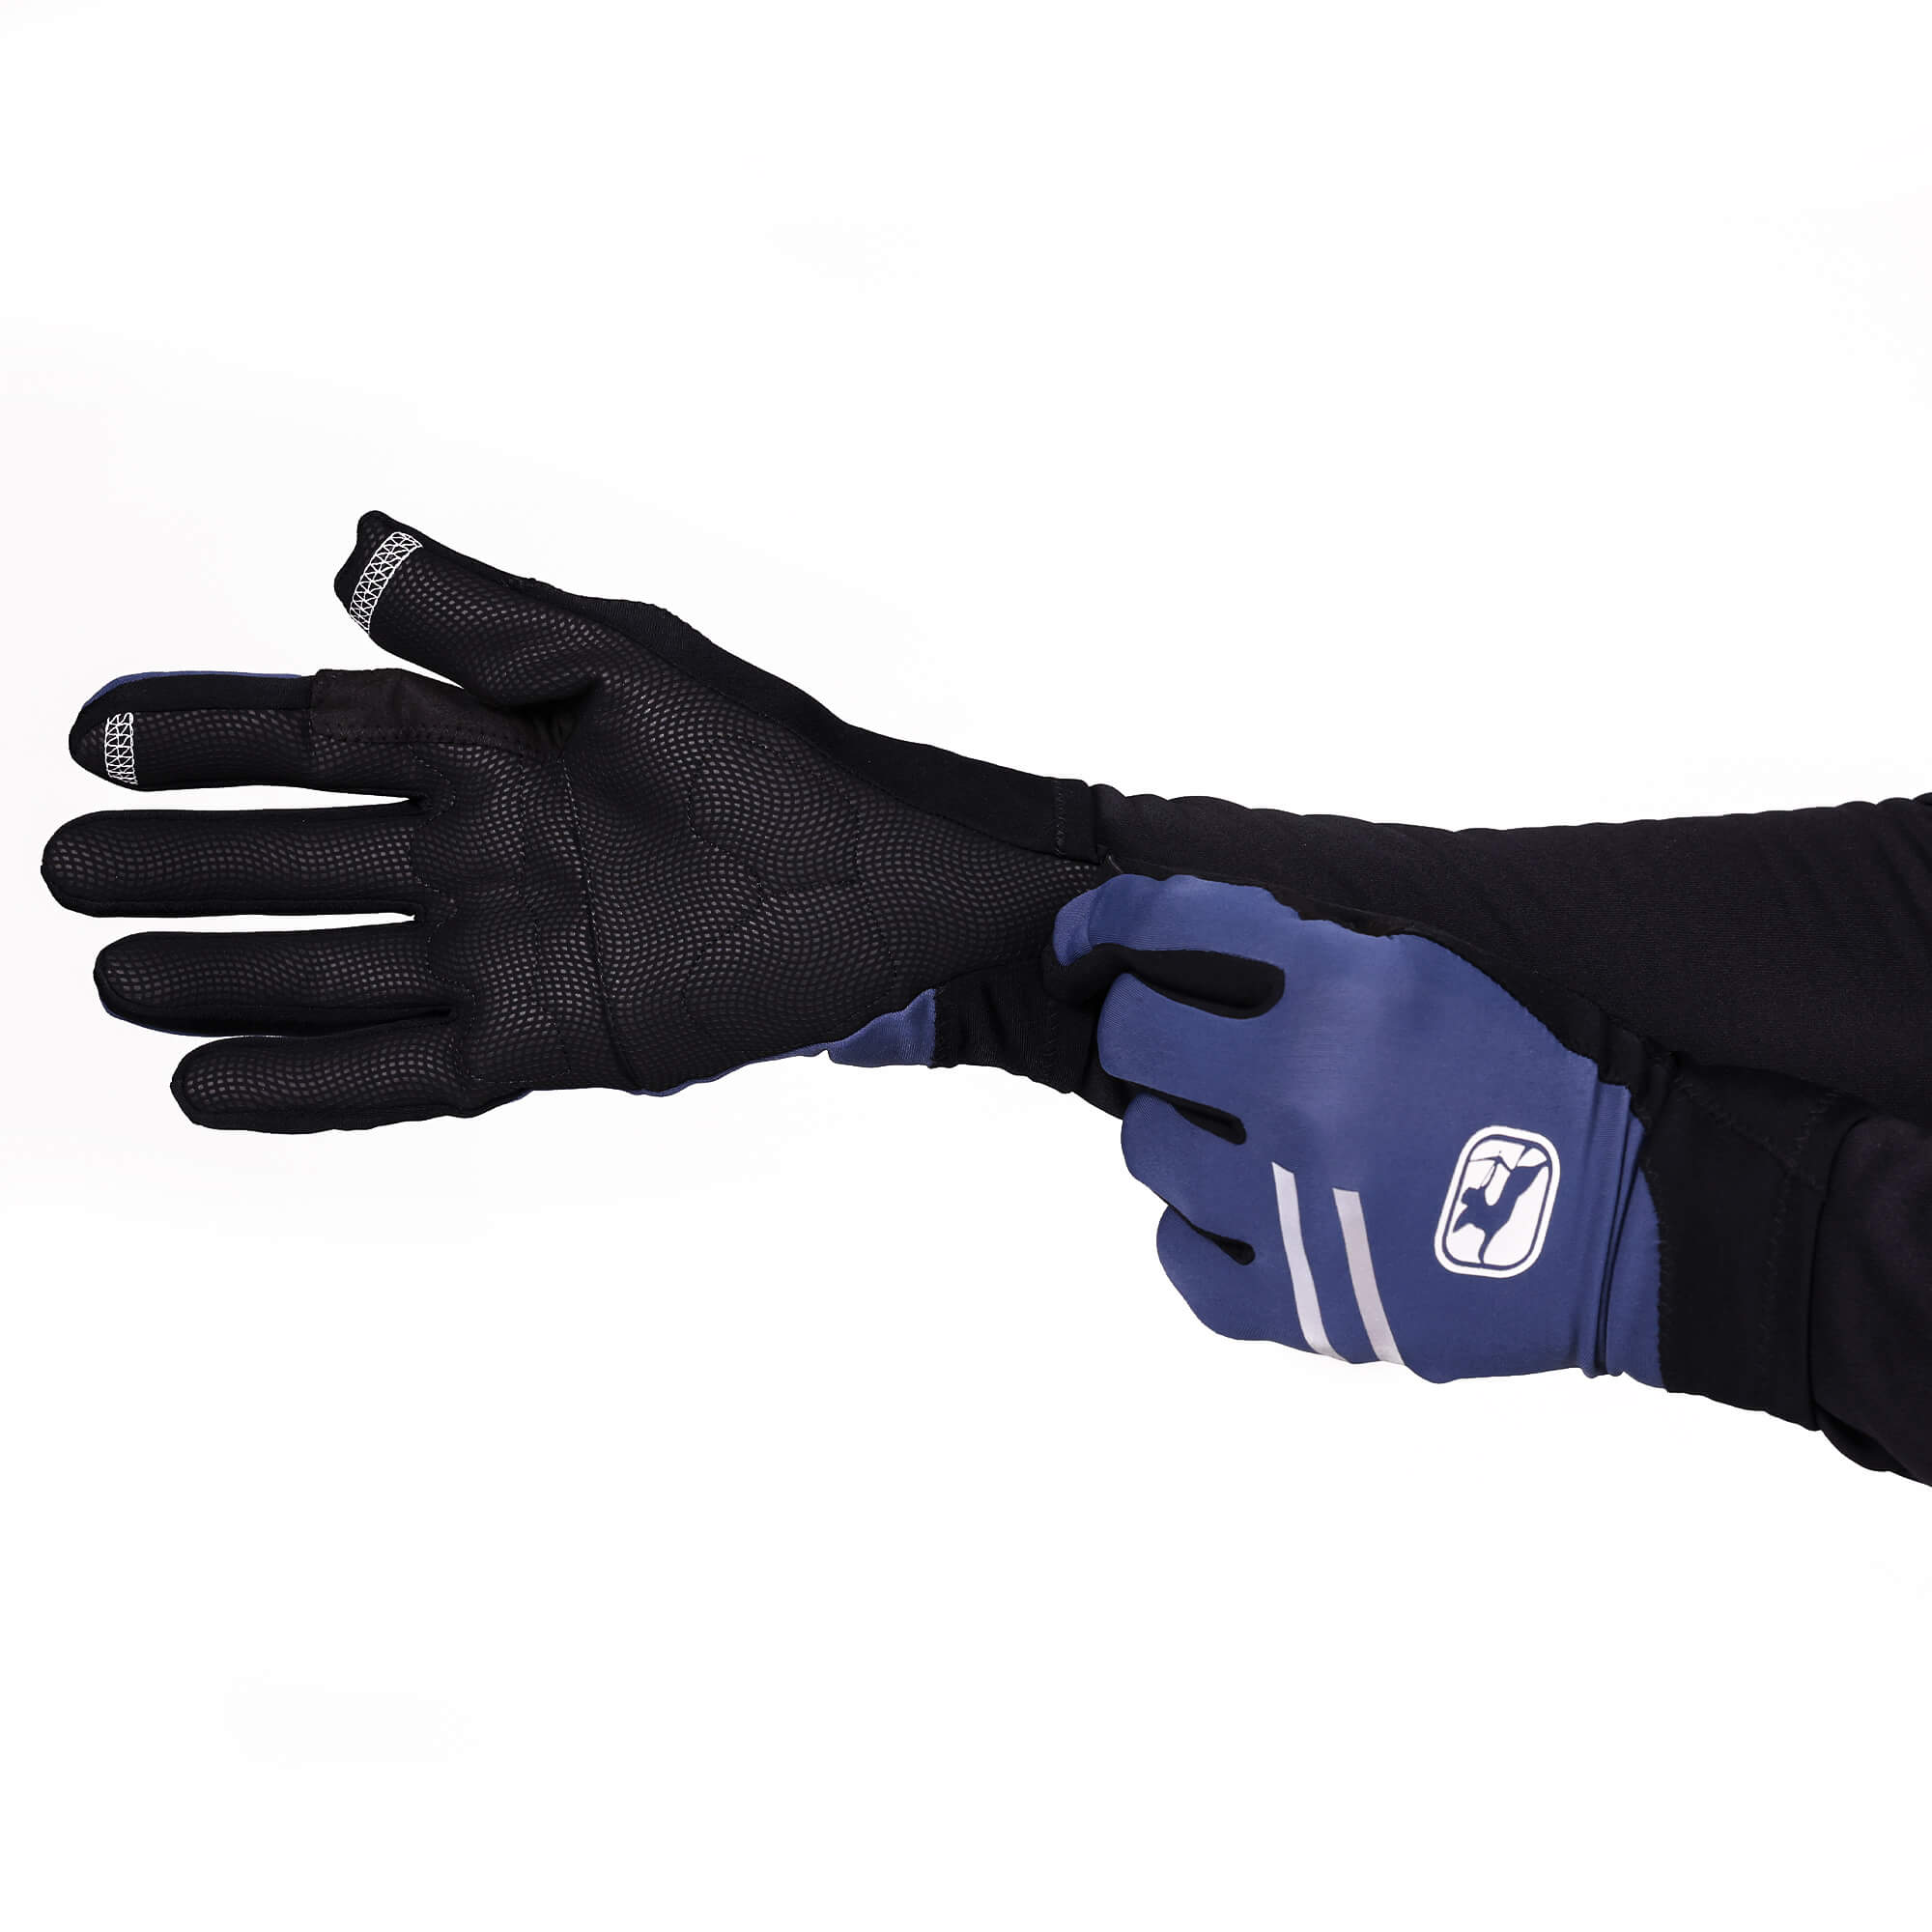 G-Shield Thermal Full Finger Gloves